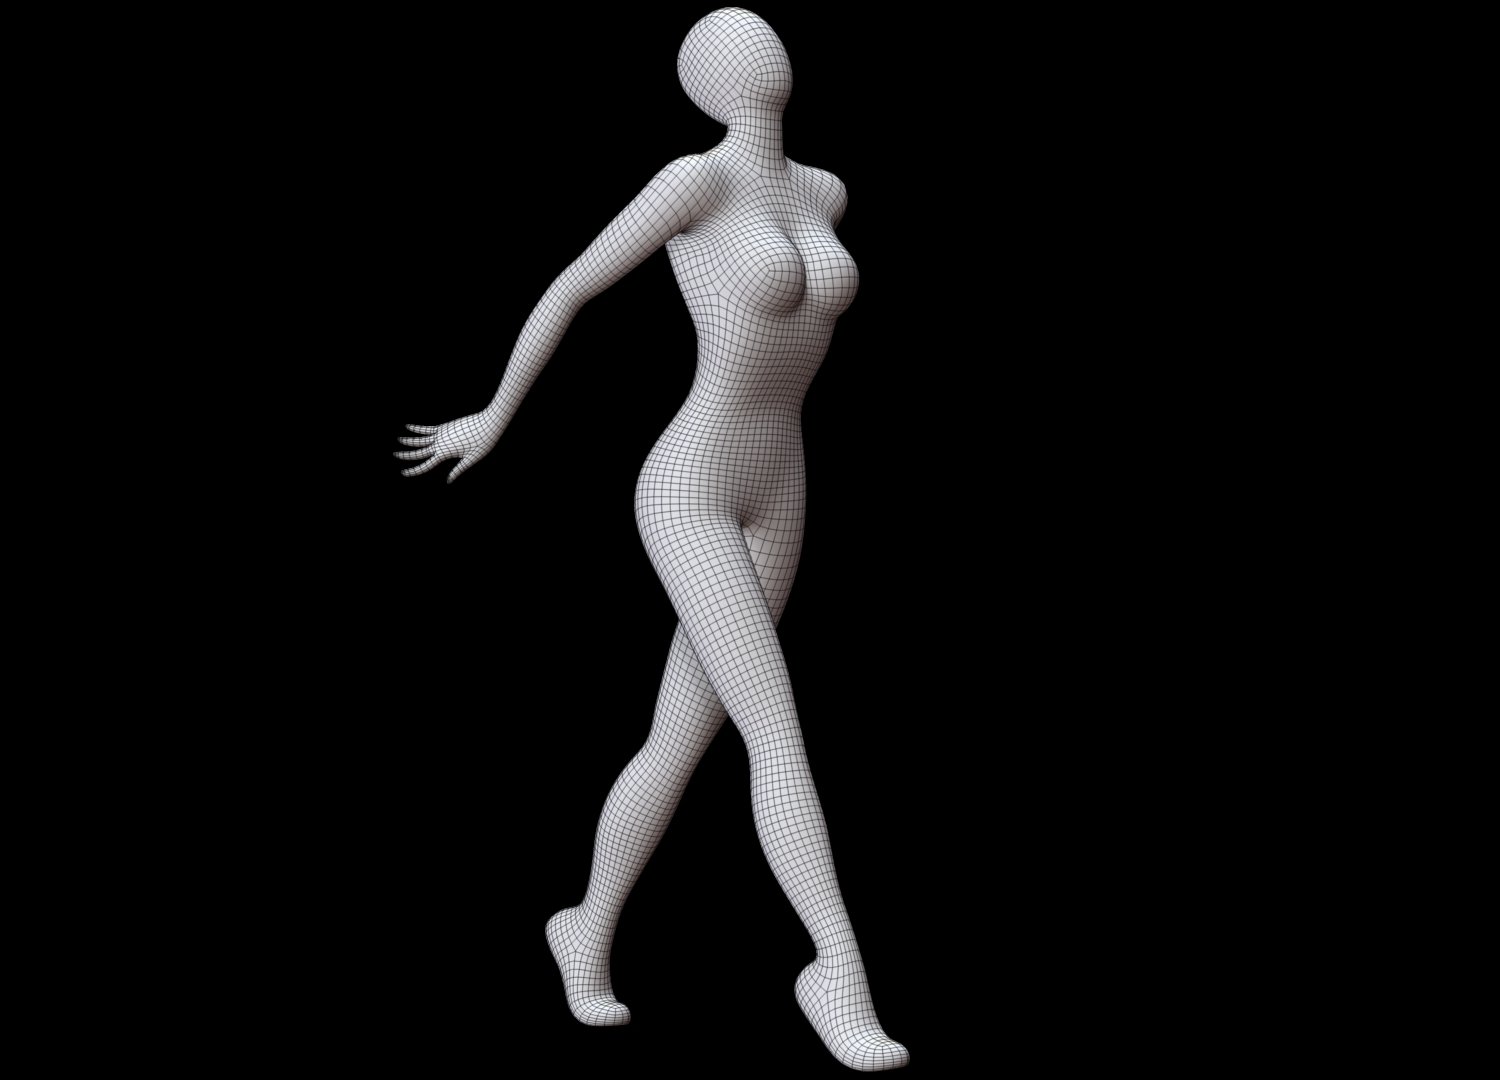 Costume de sport femme pose 1 modèle 3D $35 - .max .fbx .obj - Free3D